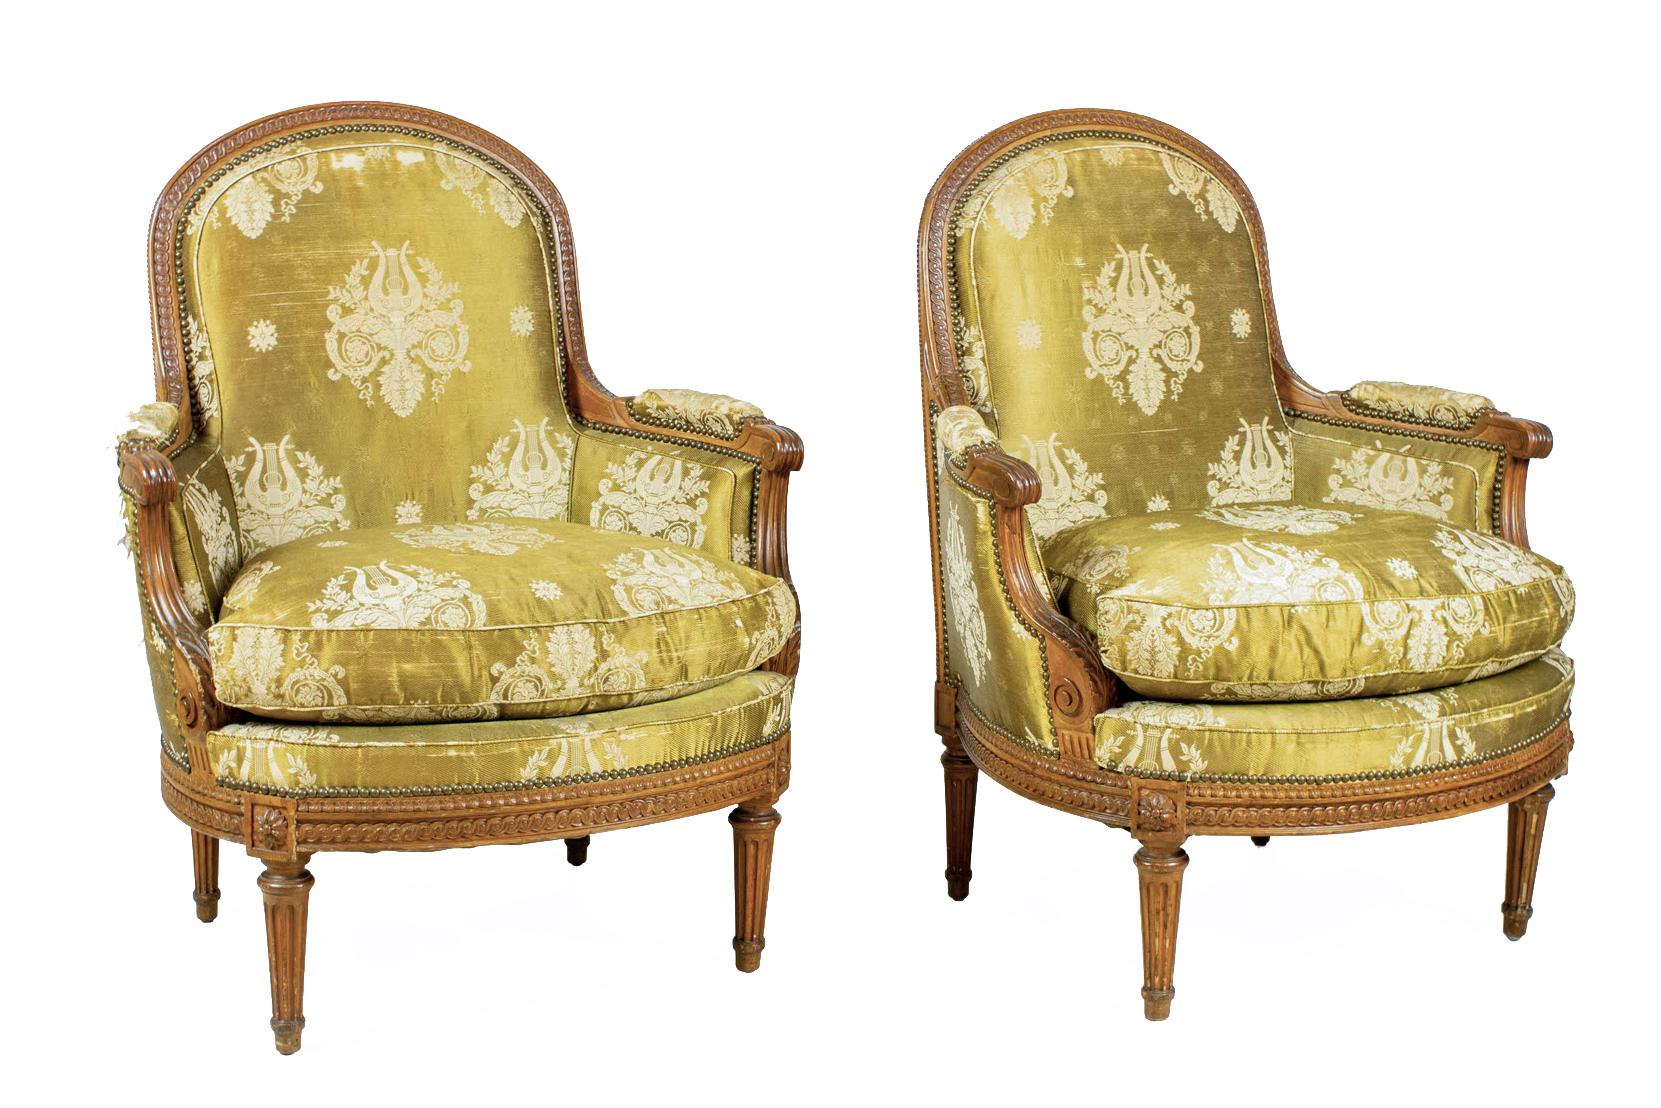 Paire de bergères / fauteuils Louis XVI (XVIIIe siècle) en bois de hêtre sculpté, avec bordure à motif de perles sculptées sur le dossier arqué et le cadre de l'assise, avec des bras sculptés d'acanthes et de volutes et une tapisserie en damas doré